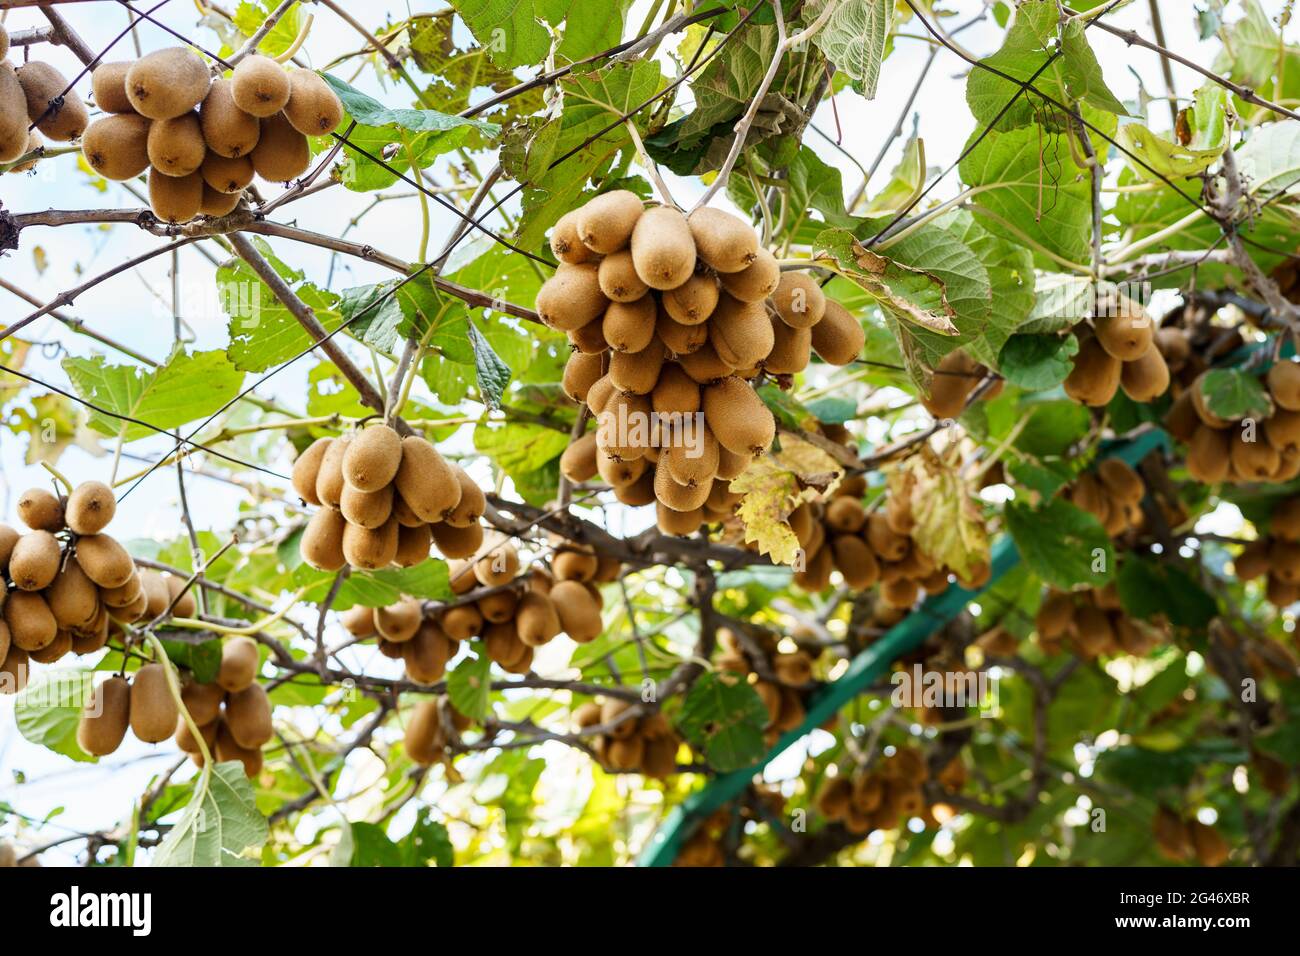 De grands kiwis bruns mûrs sont accrochés à un arbre, sur le toit du belvédère. Banque D'Images